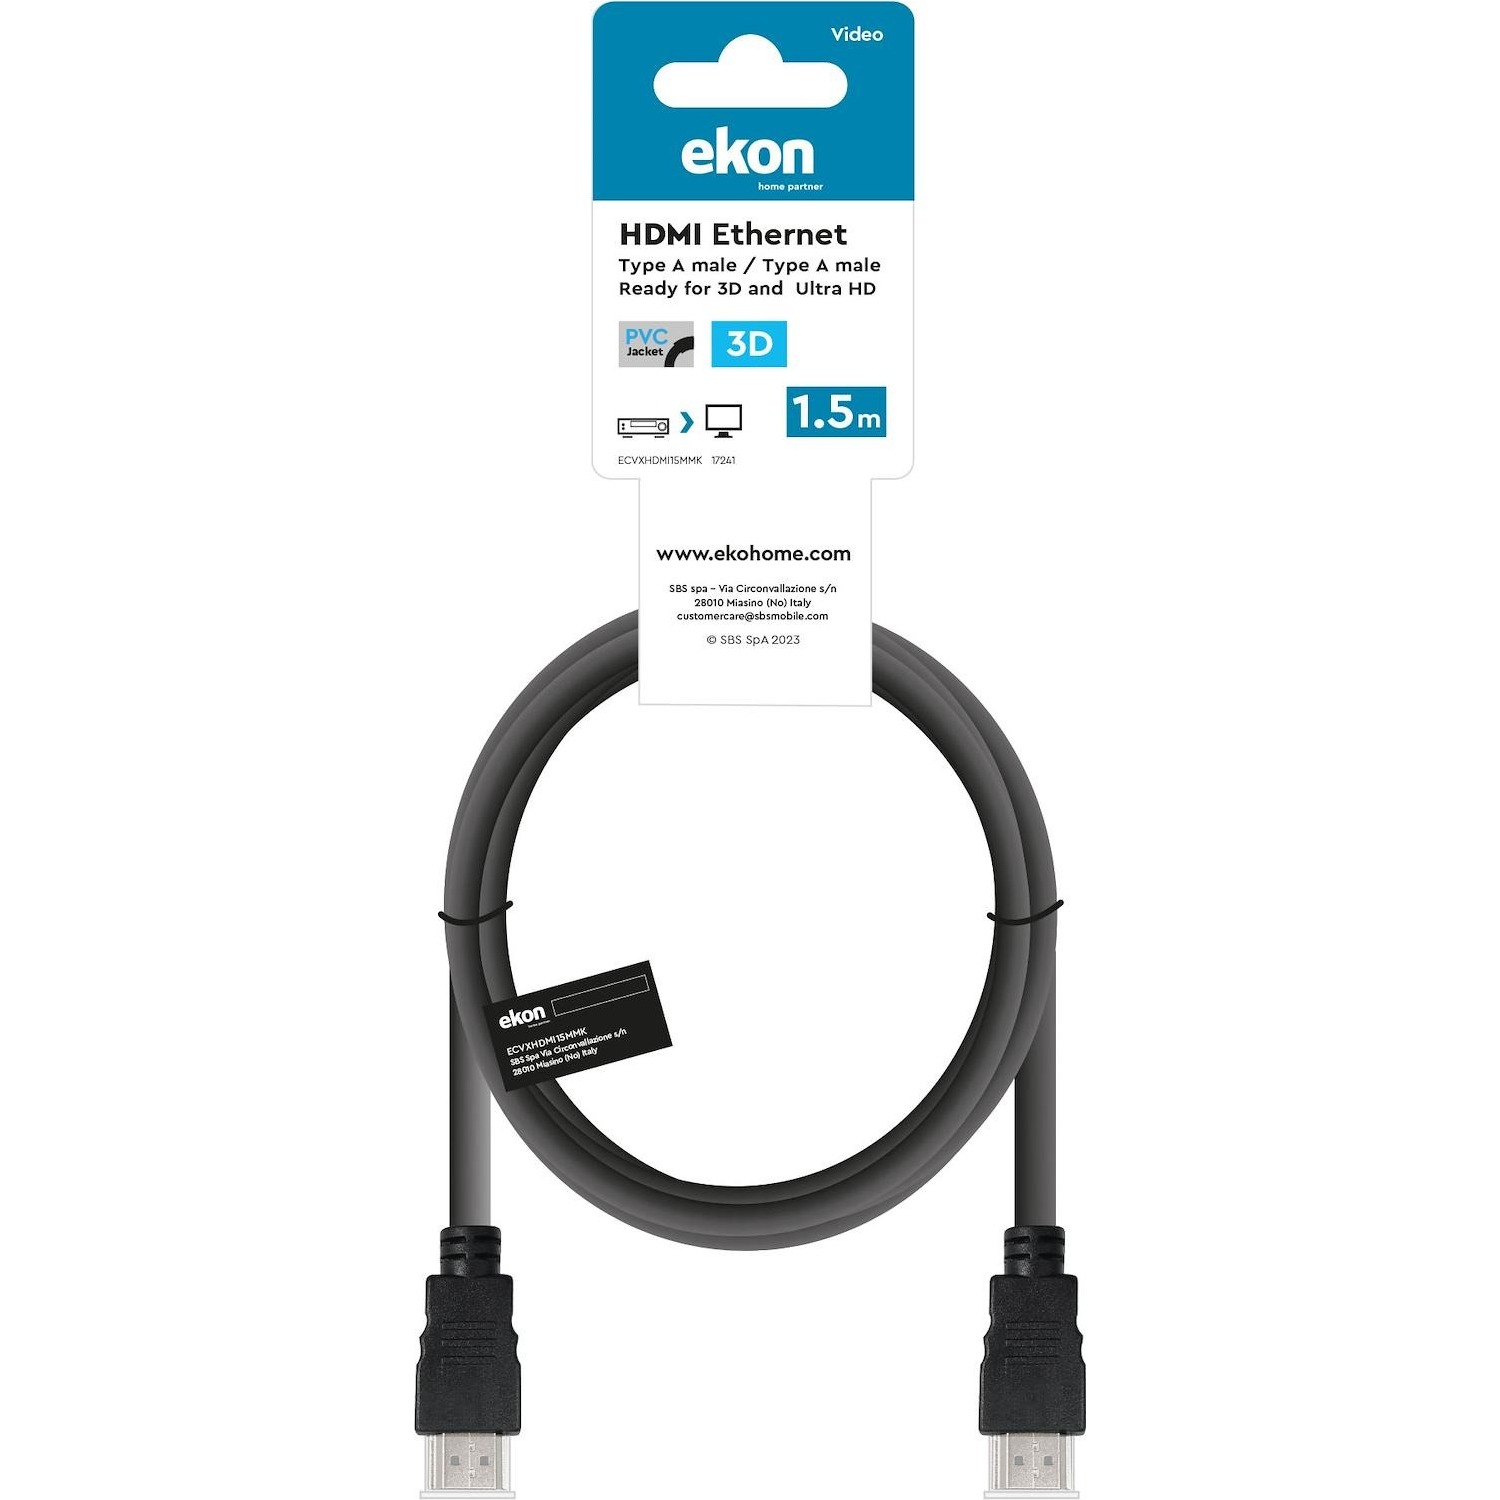 Cavo HDMI v.1.4 Ekon alta velocità lunghezza cavo 1,5 metri, con Ethernet  ideale per connessioni - DIMOStore